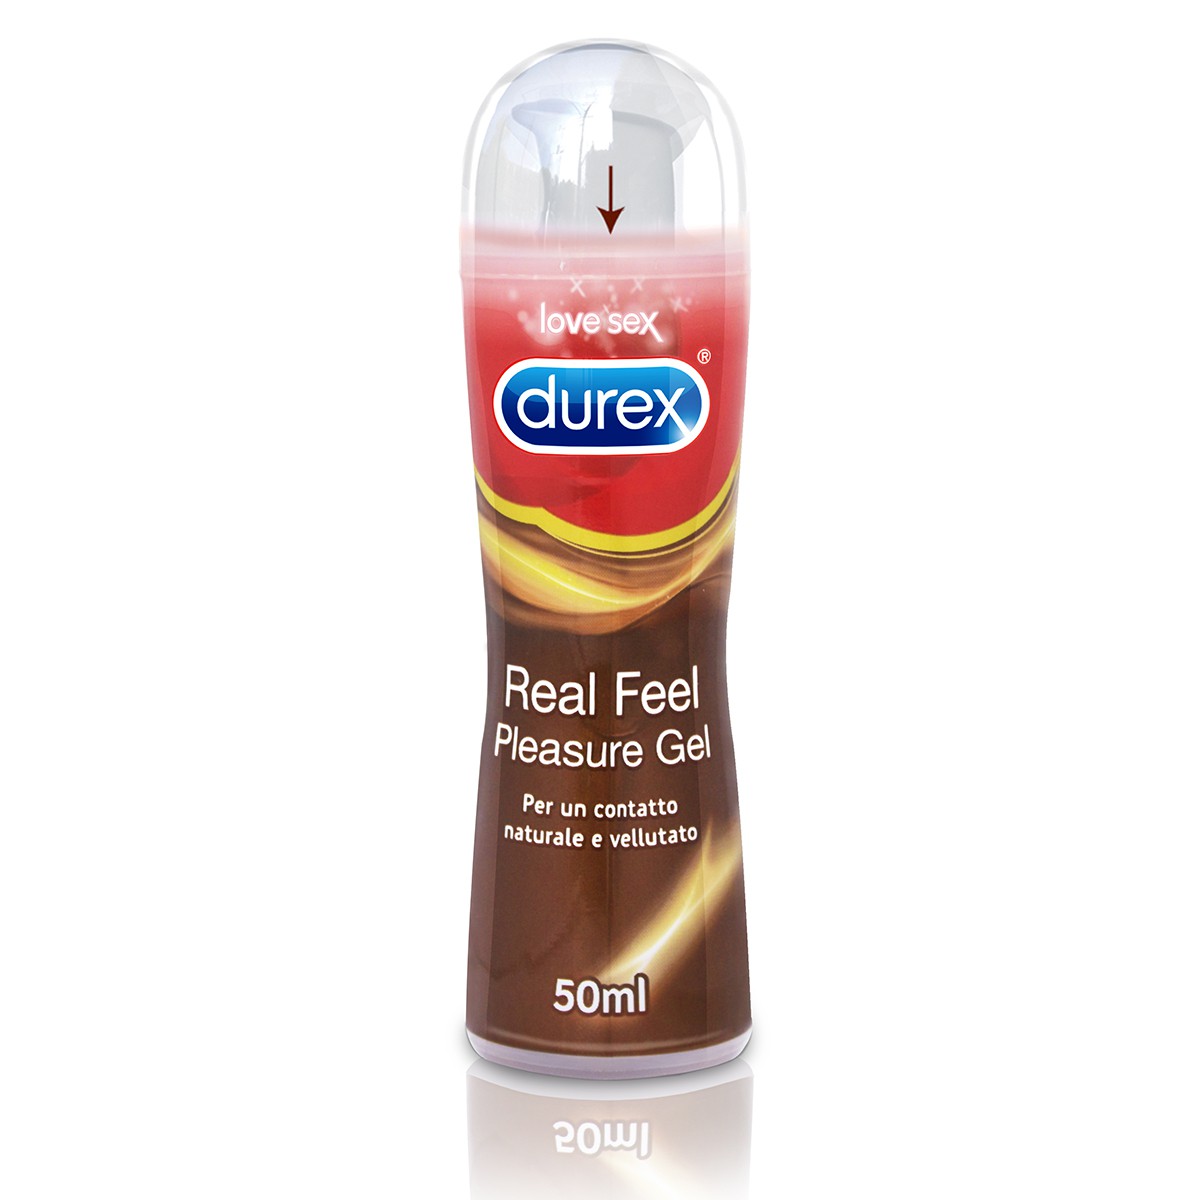 DUREX pleasure gel real feel per un contatto naturale e vellutato 50 ml.